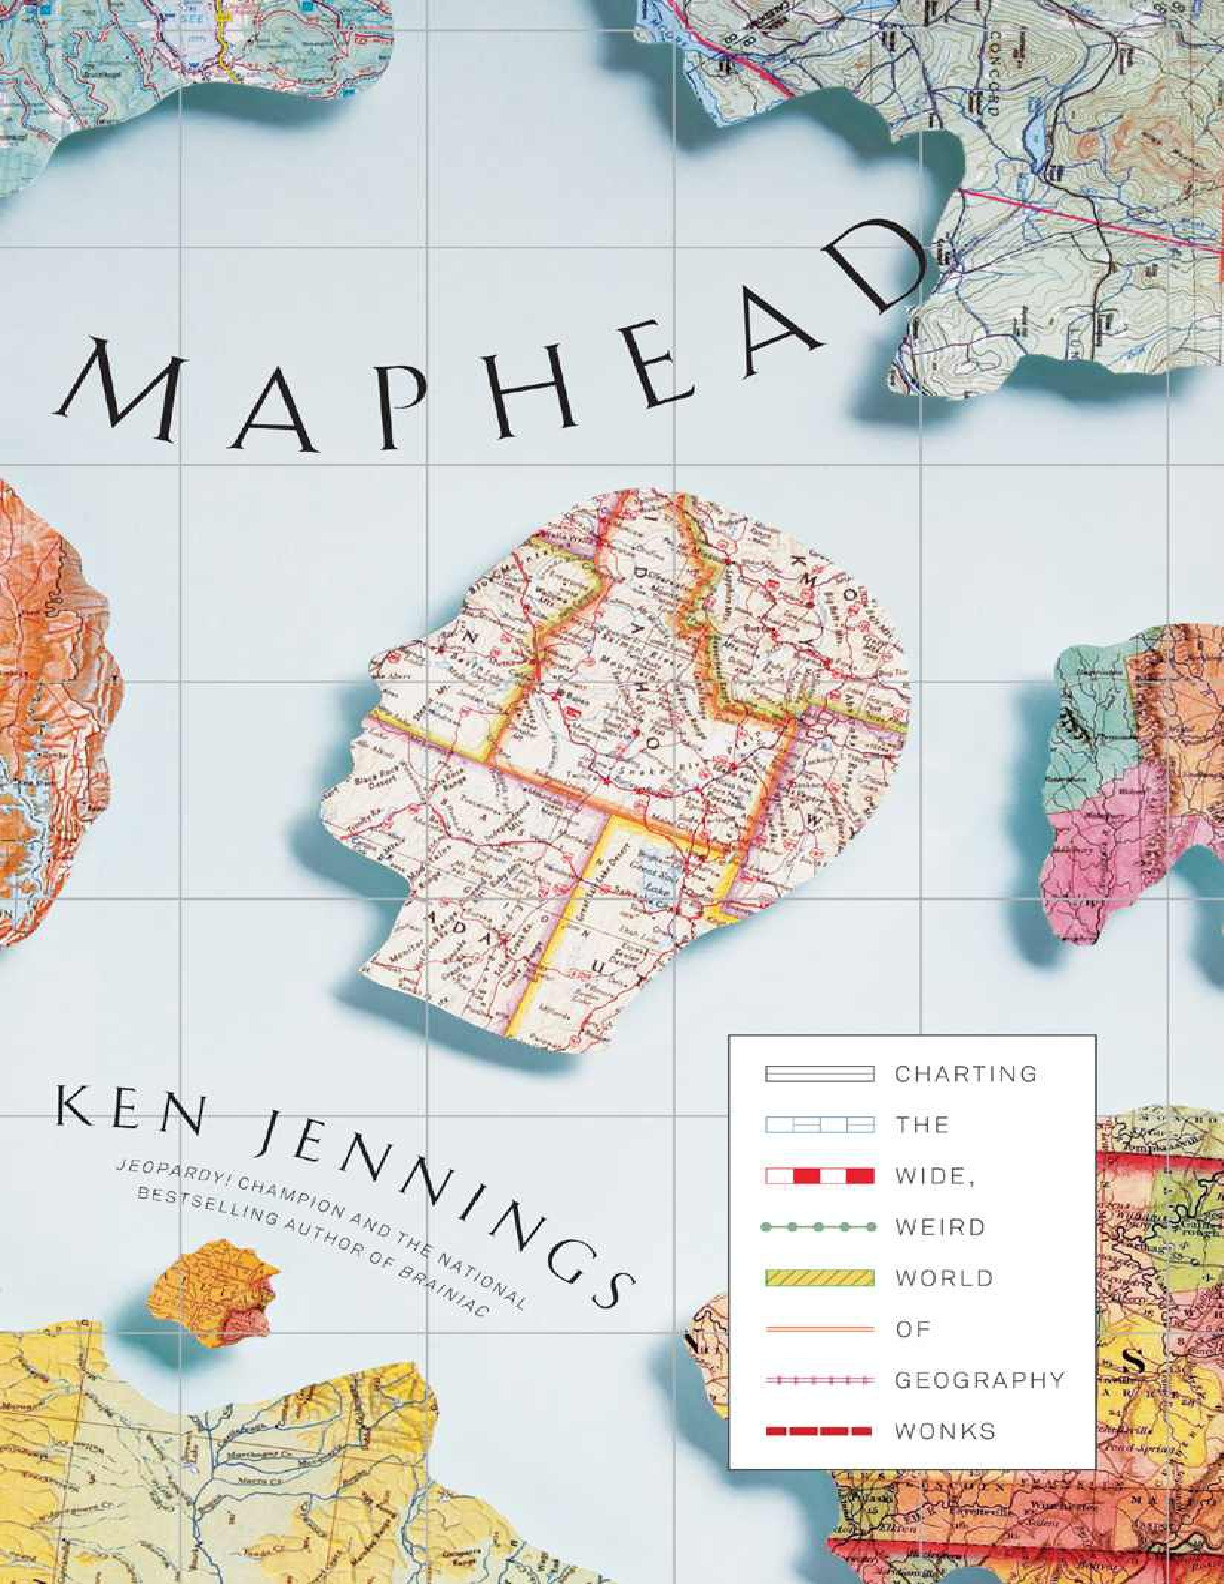 Maphead – Ken Jennings